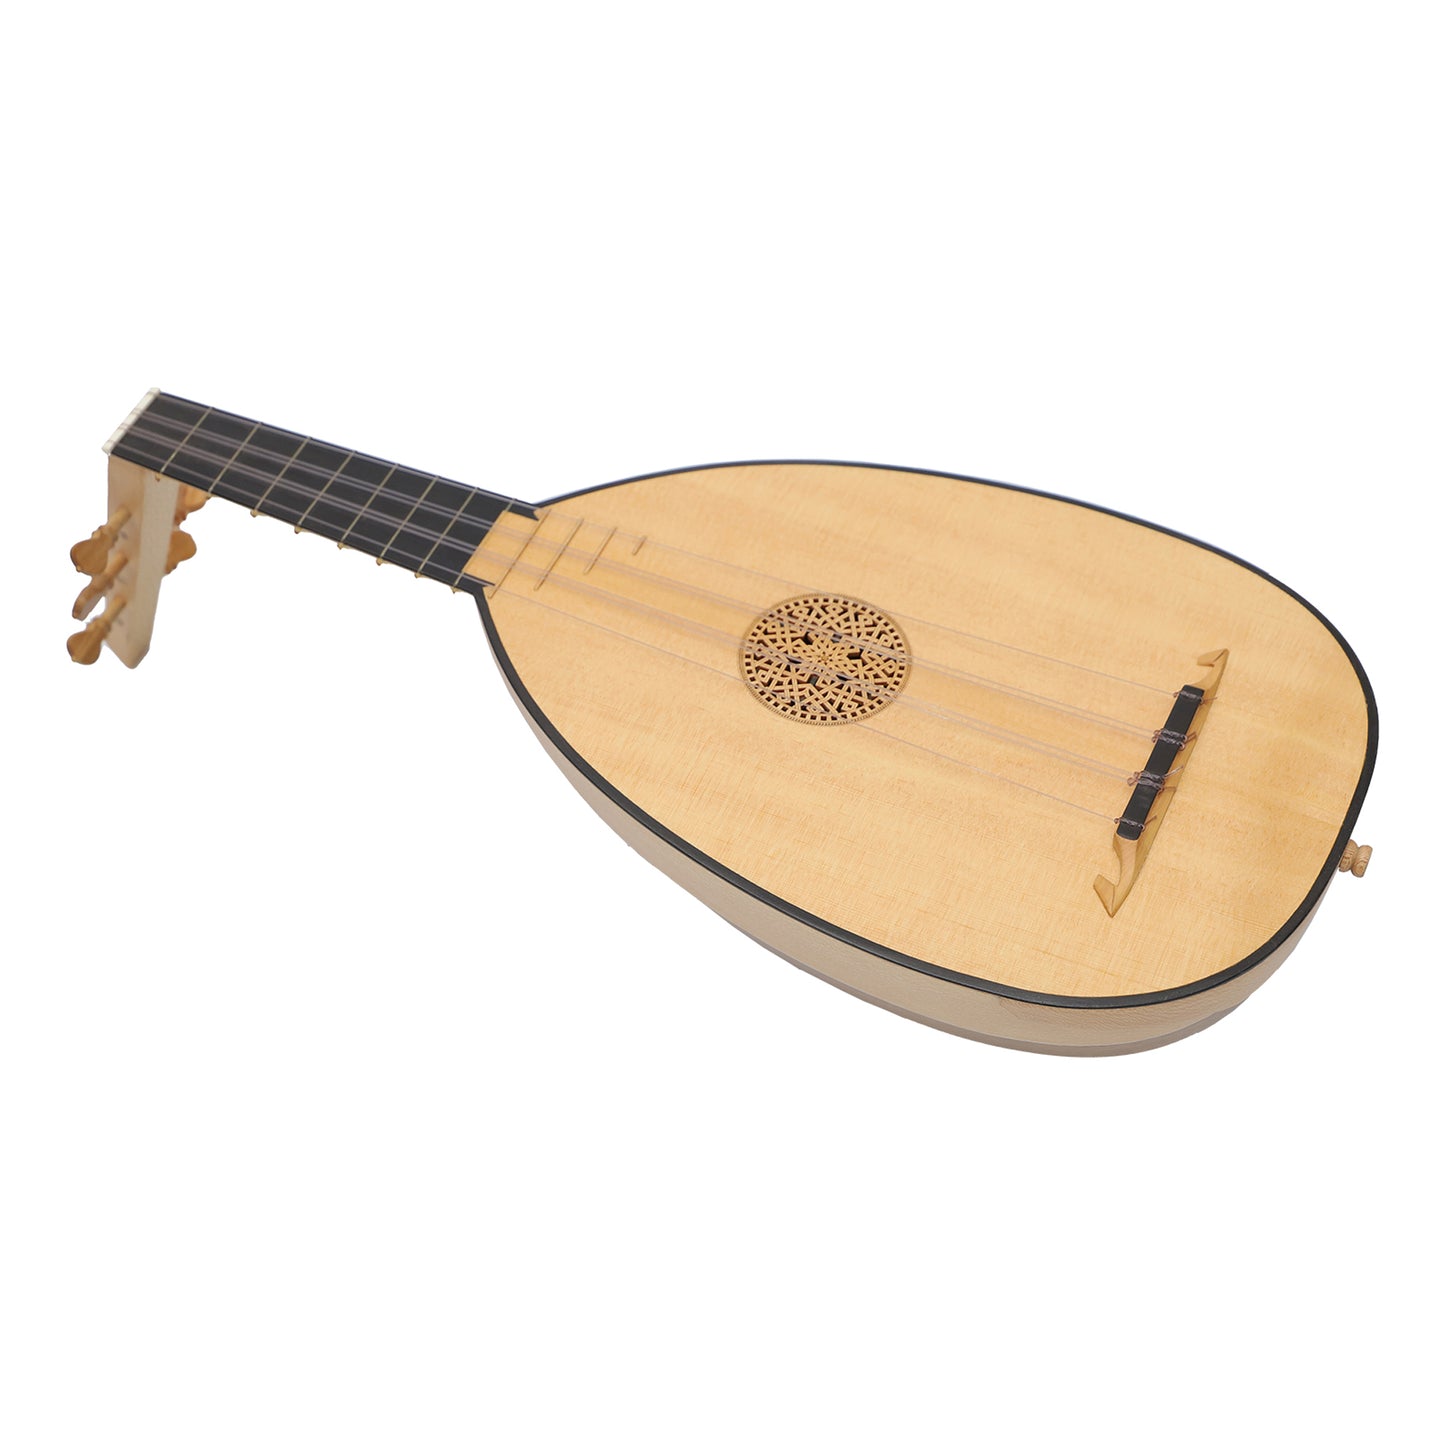 Lute Ukulele, 6 Strings Tenor Variegated Lacewood Walnut